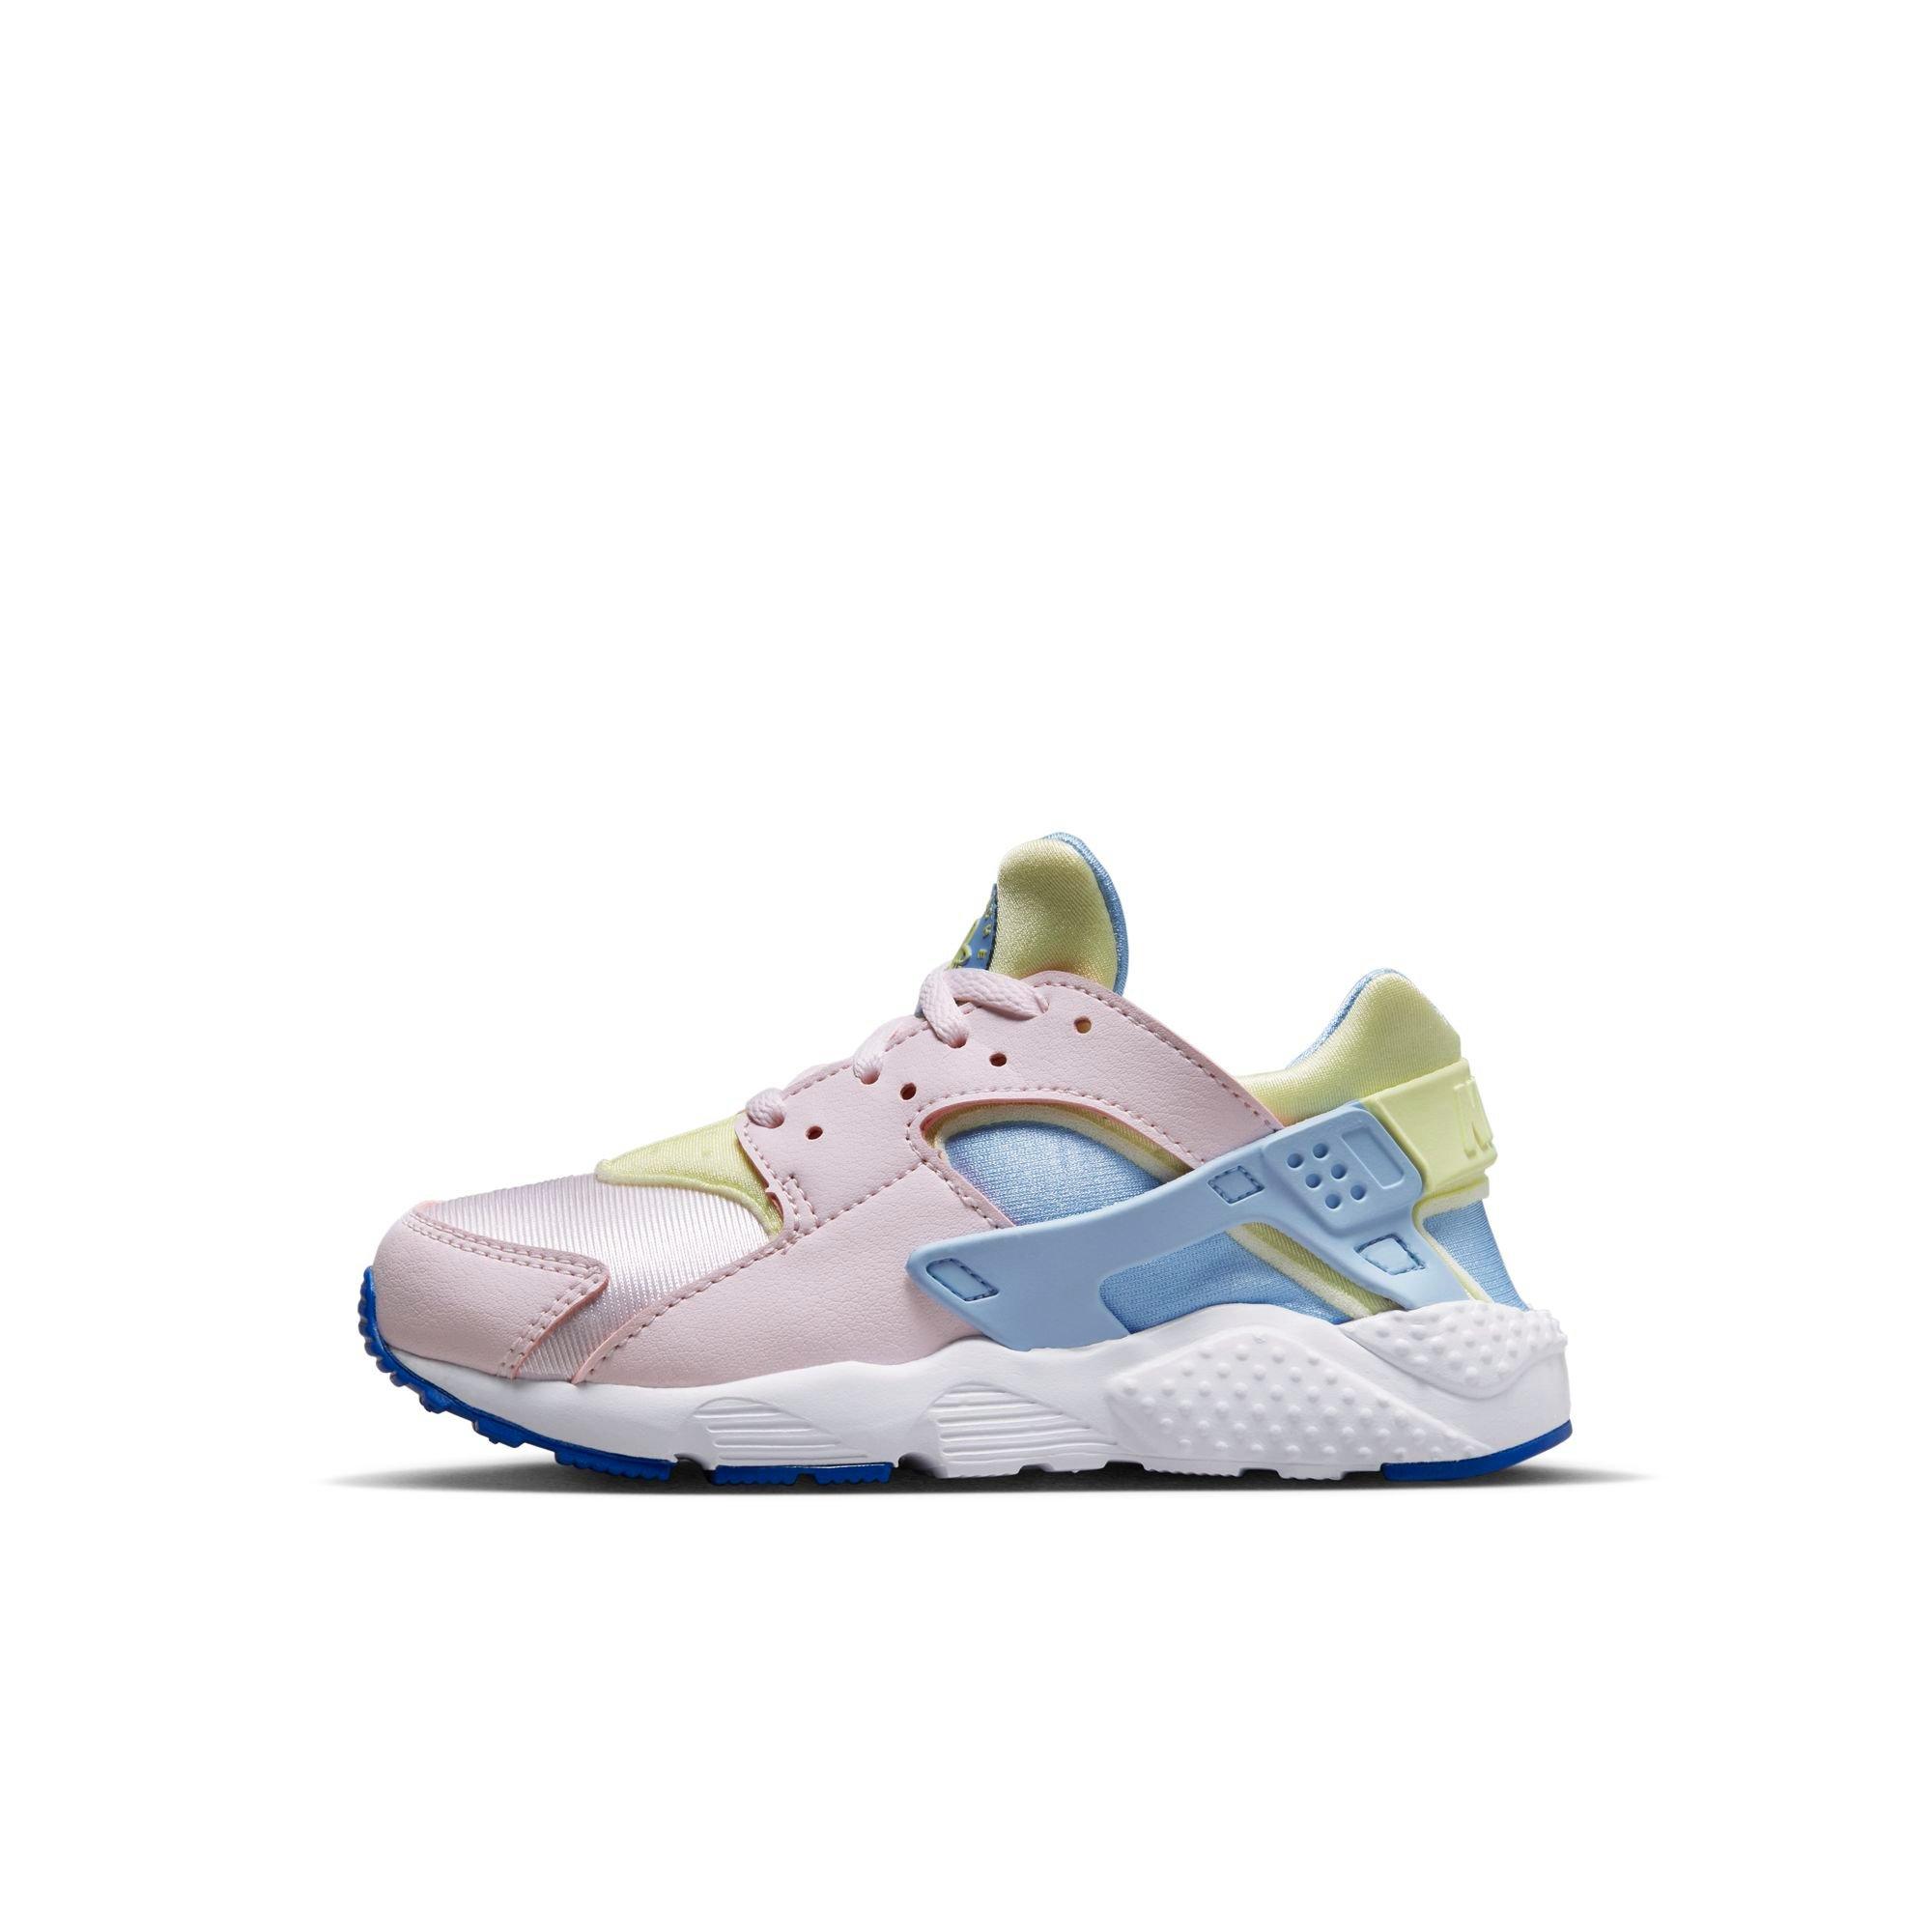 Nike Huarache Run "Pearl Bliss/Citron Girls' Shoe